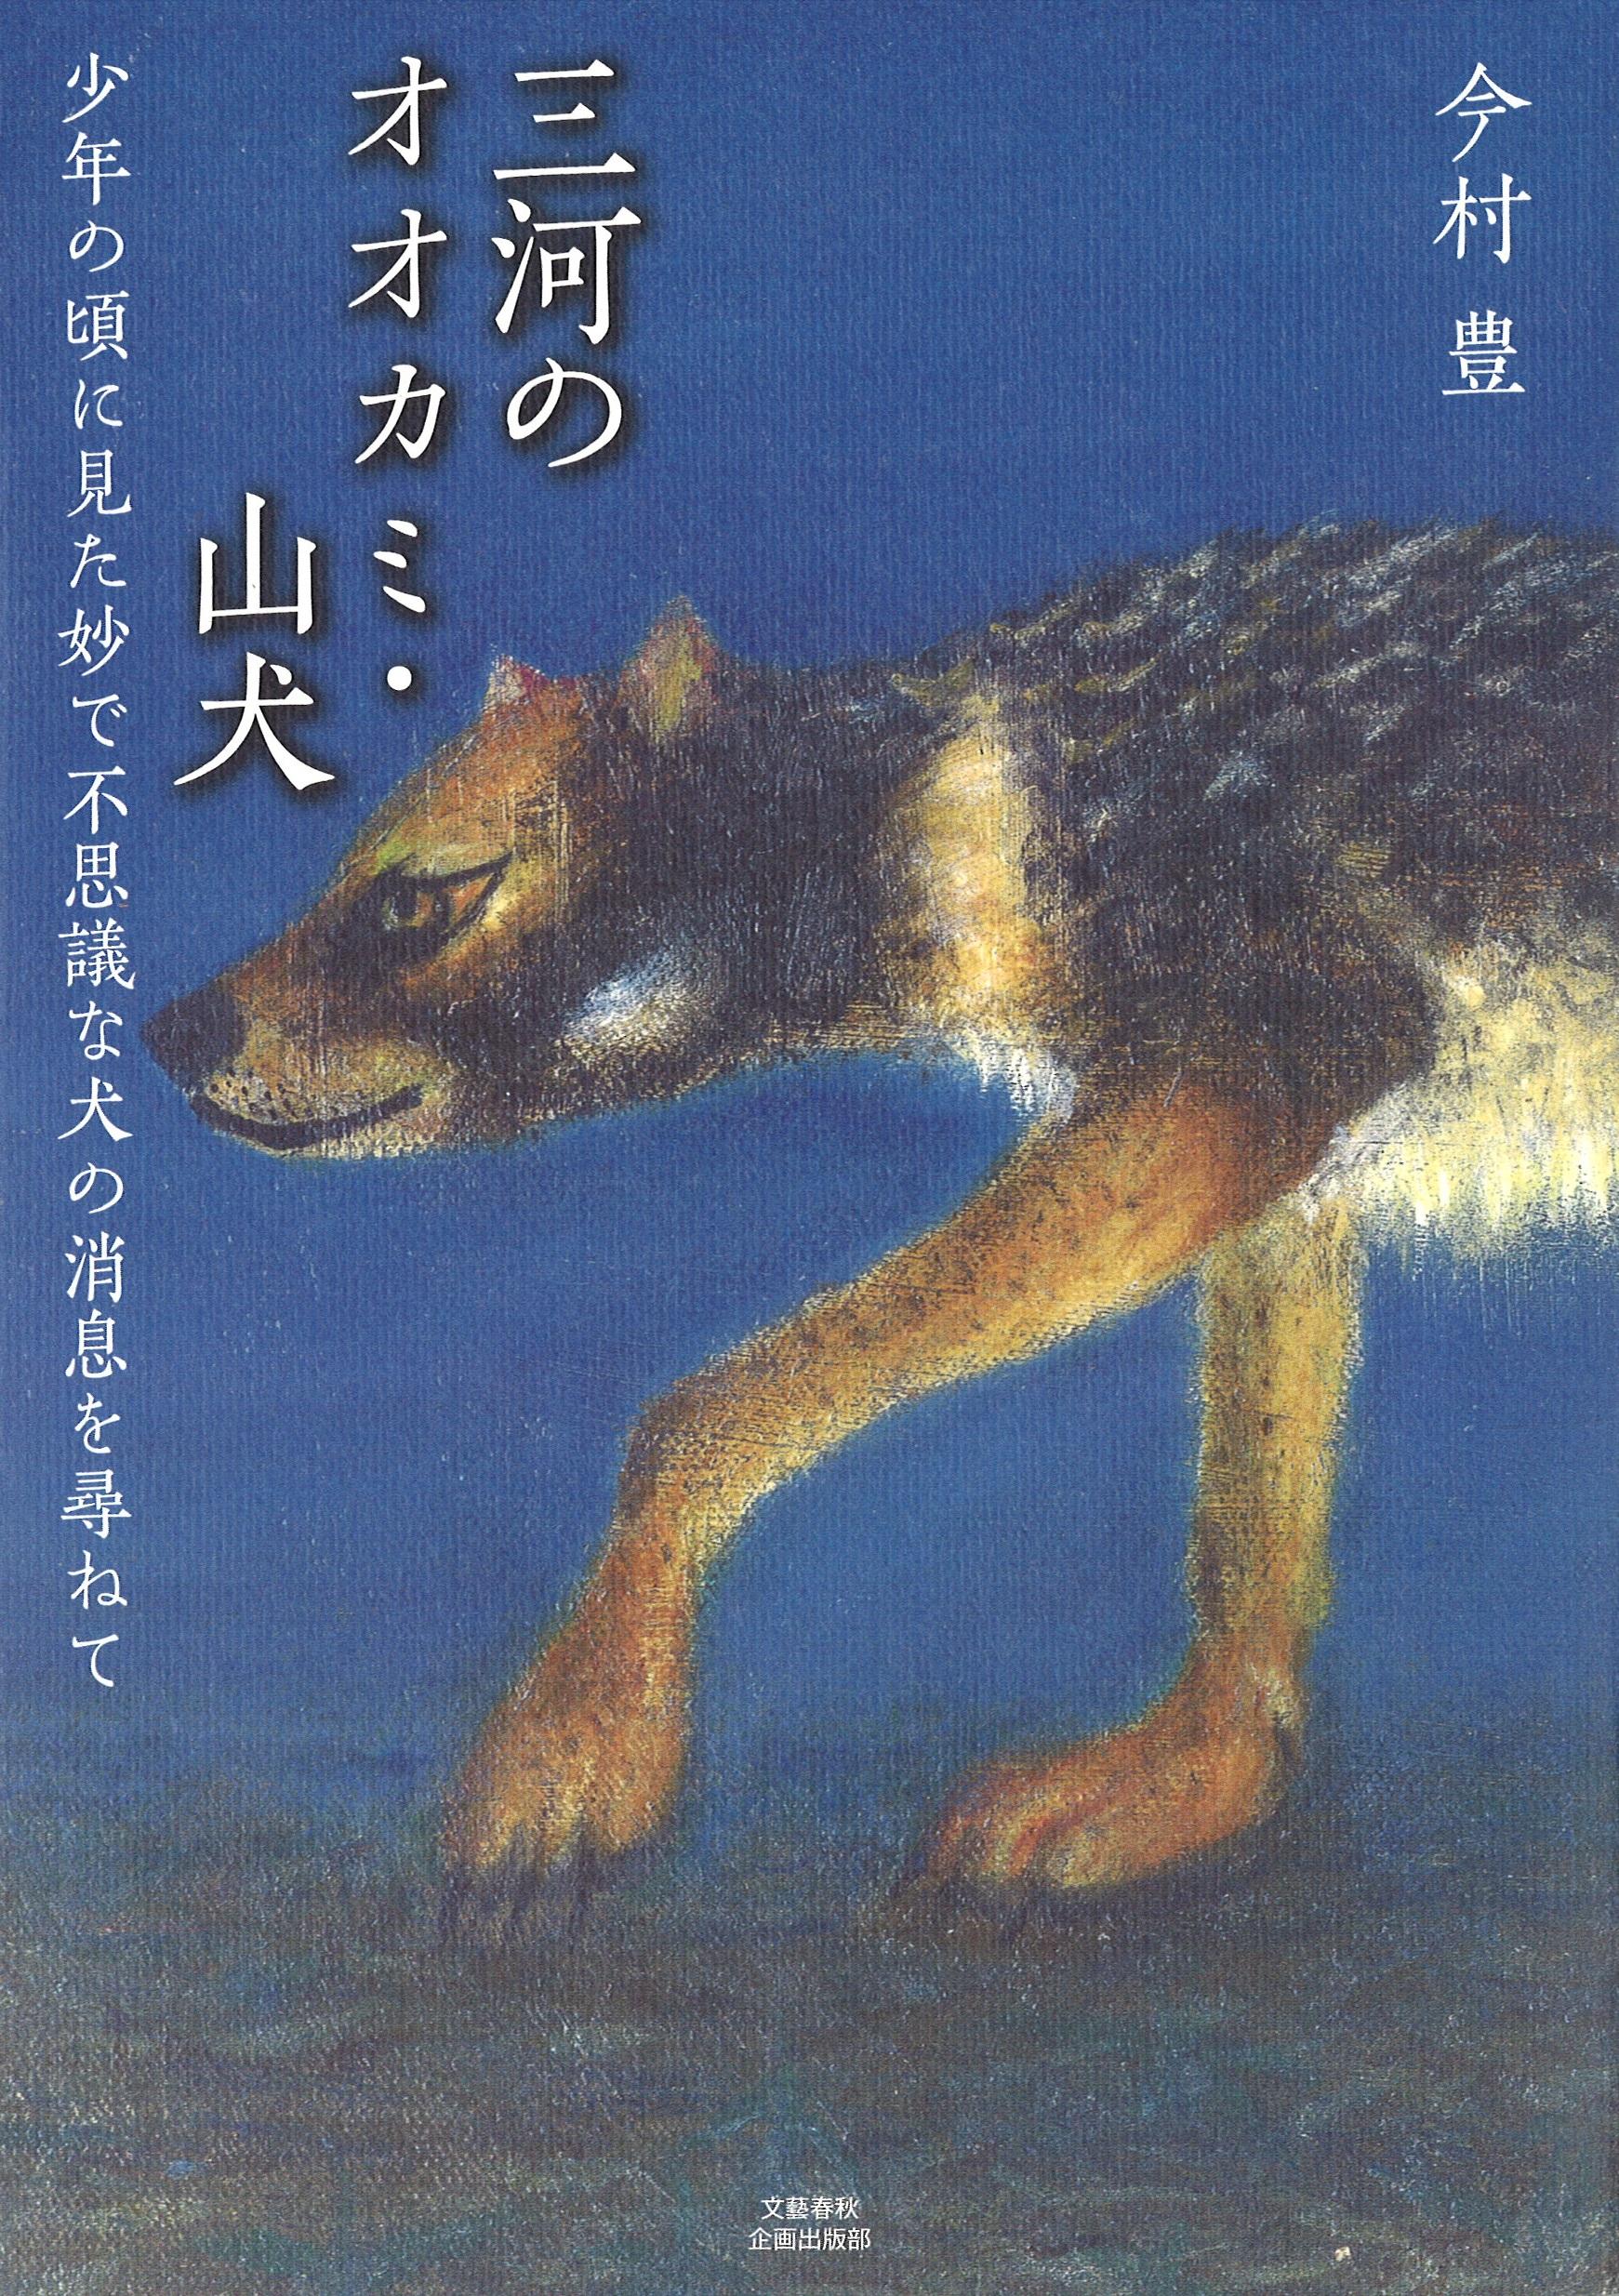 三河のオオカミ・山犬の商品画像